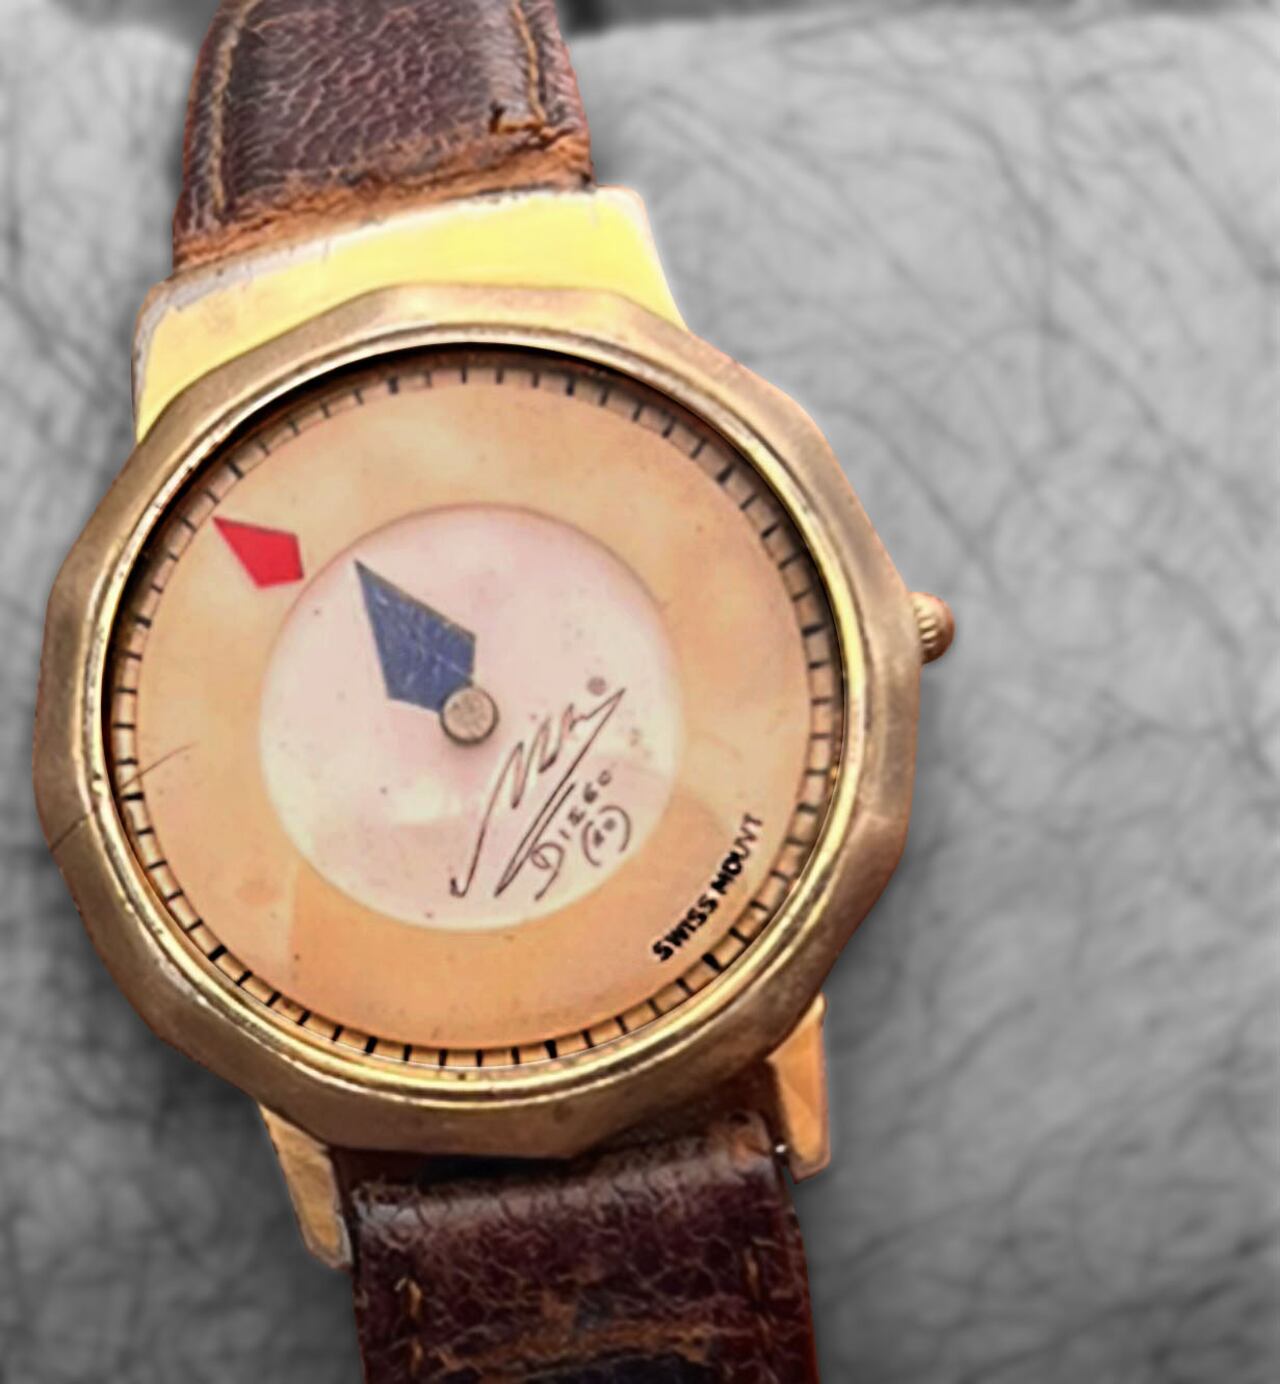 Reloj con la firma de Maradona.